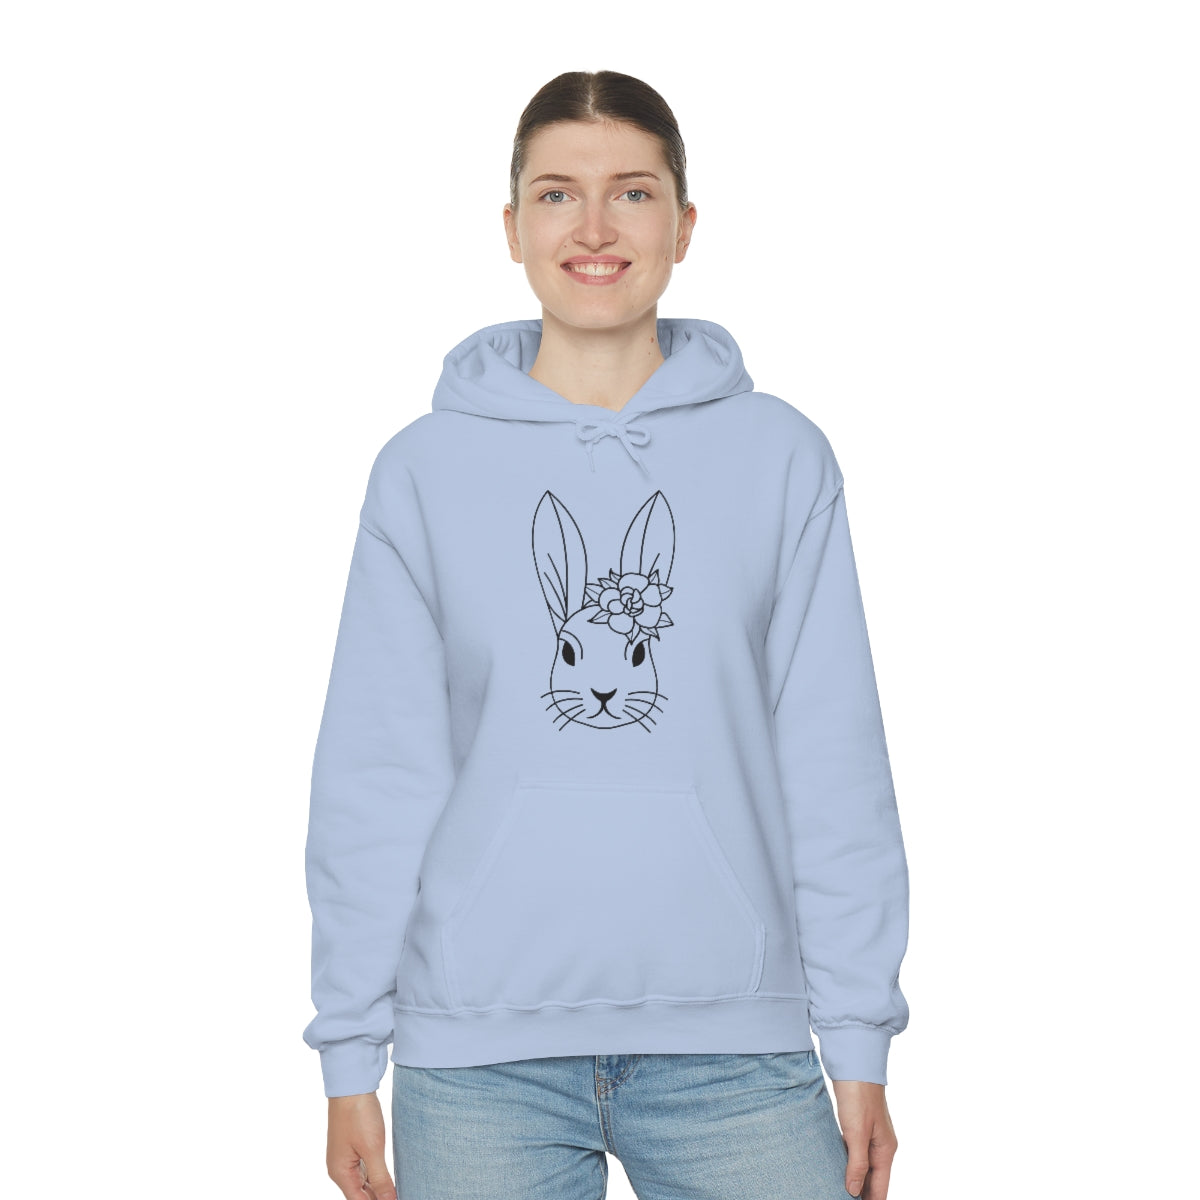 Bunny with flower - Hooded Sweatshirt